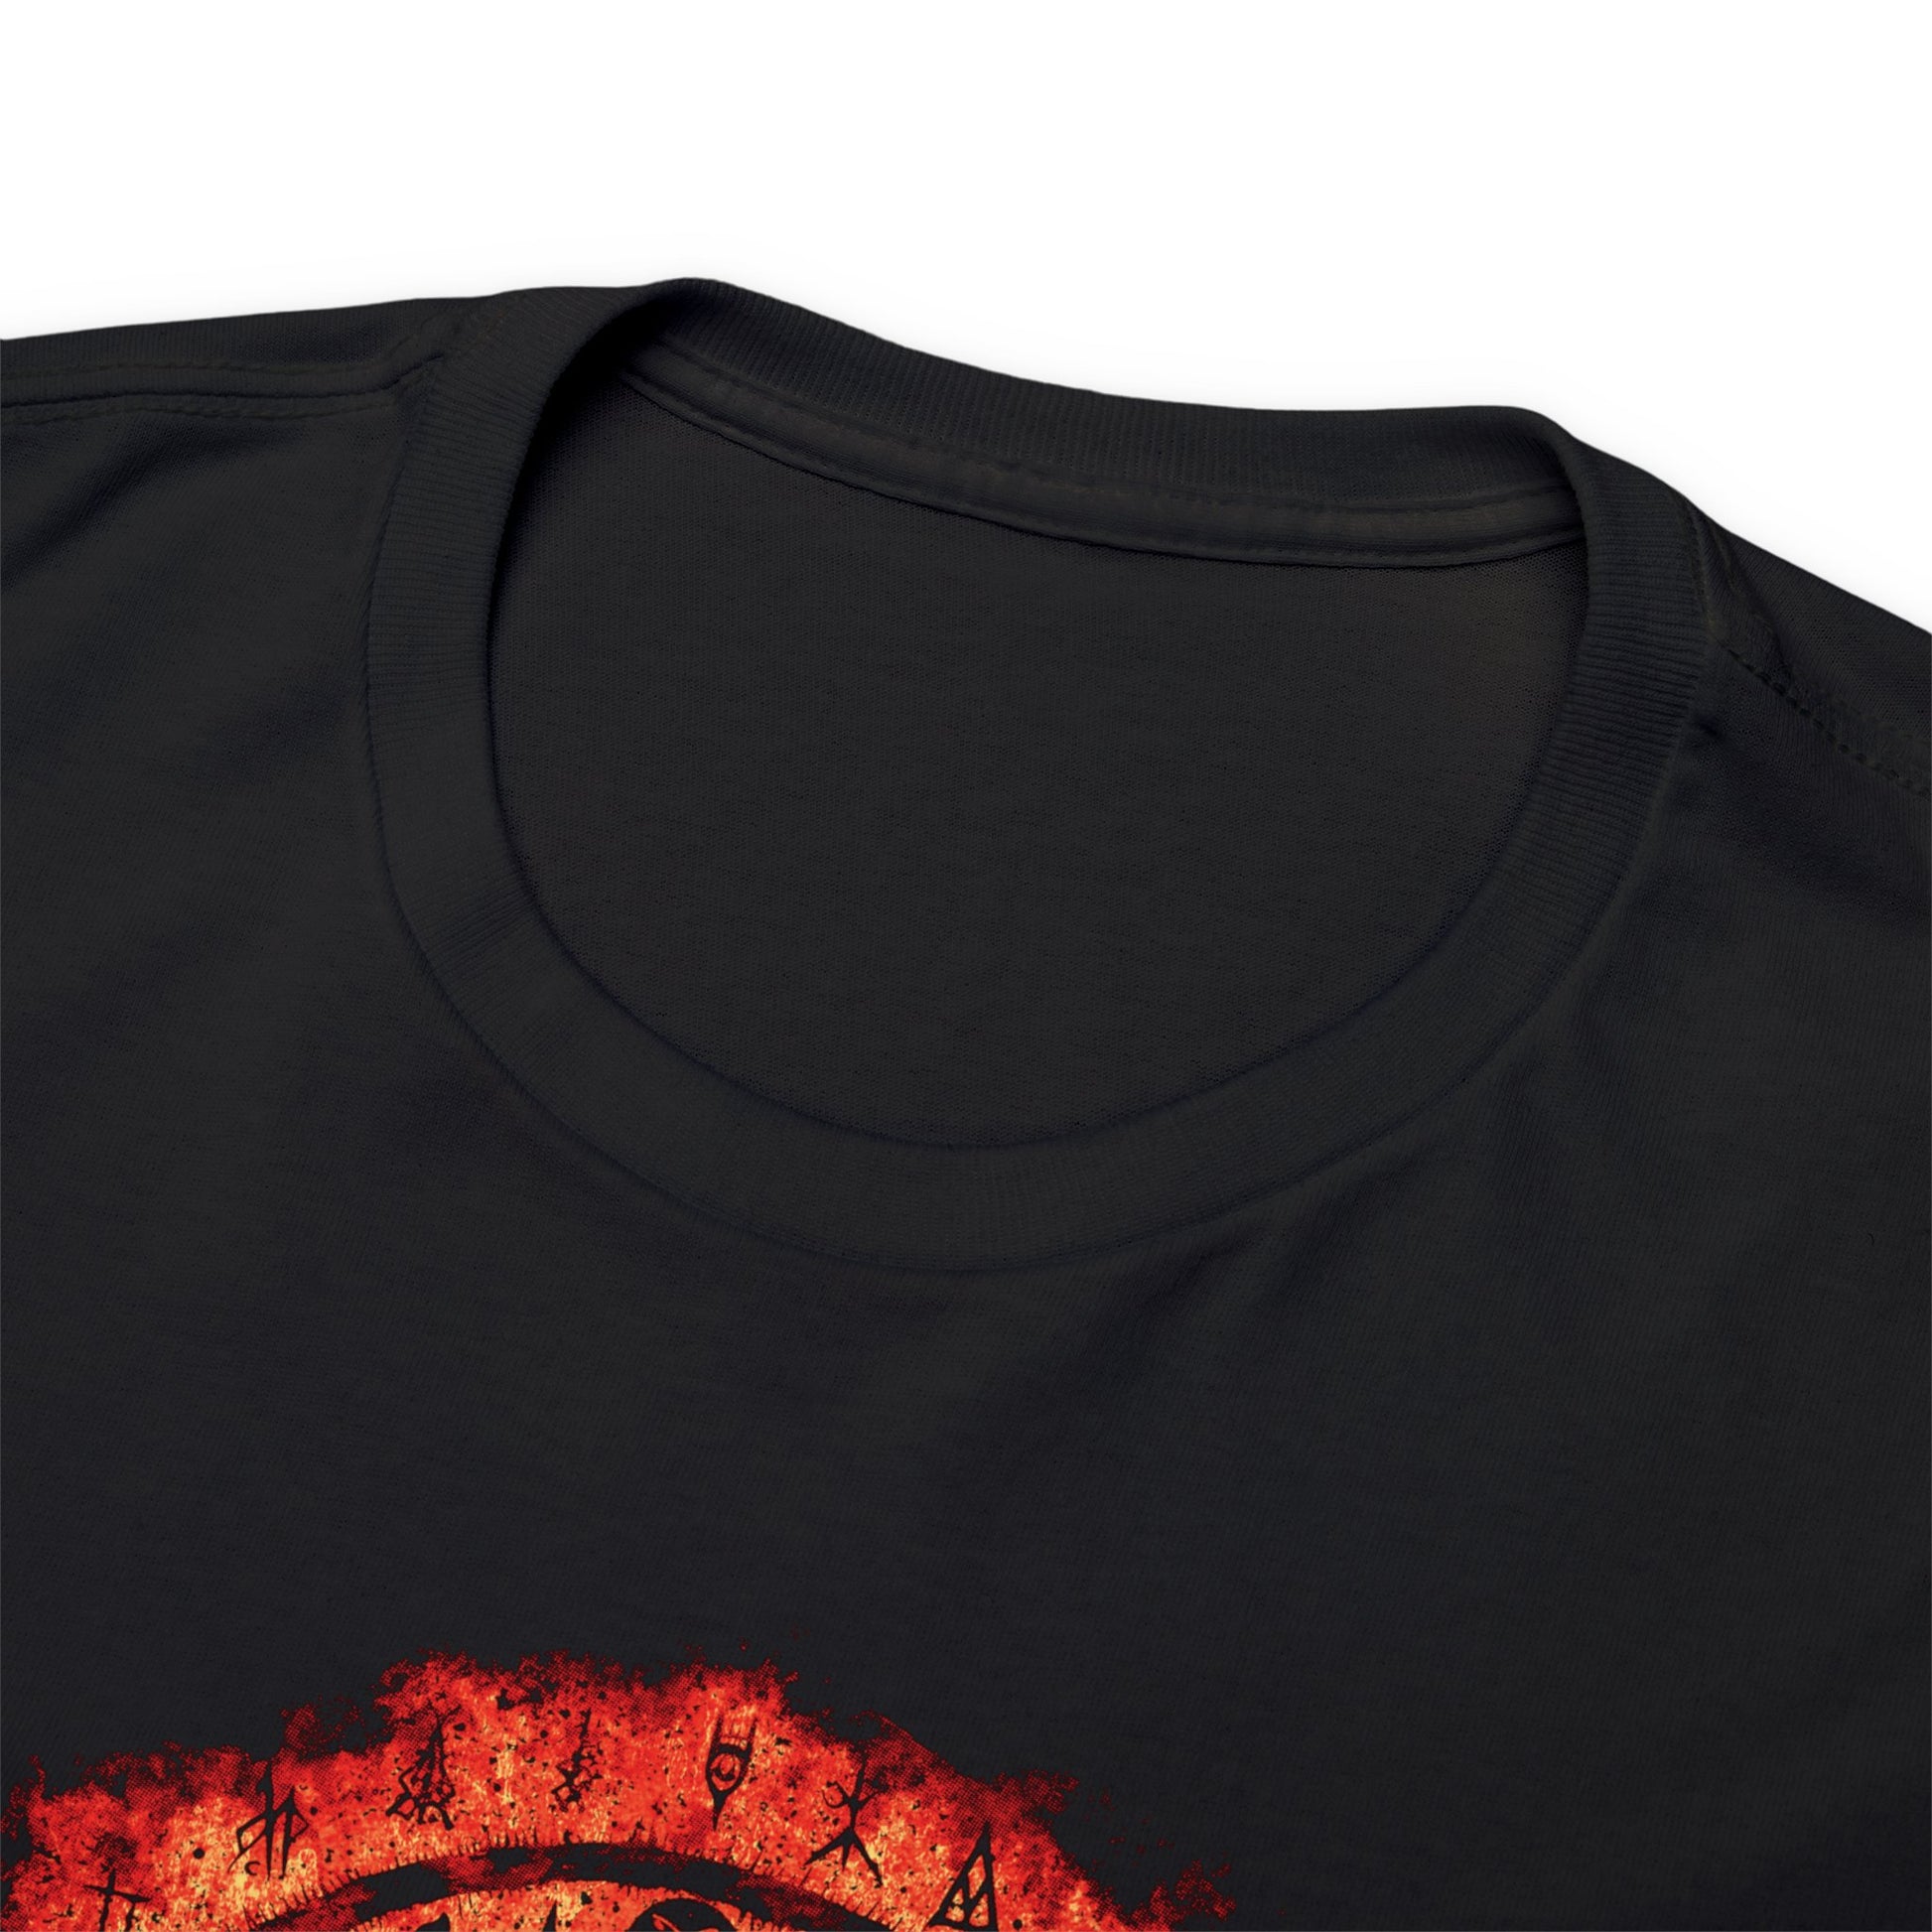 Unisex T-shirt Witchcraft Seal in Orange - Frogos Design